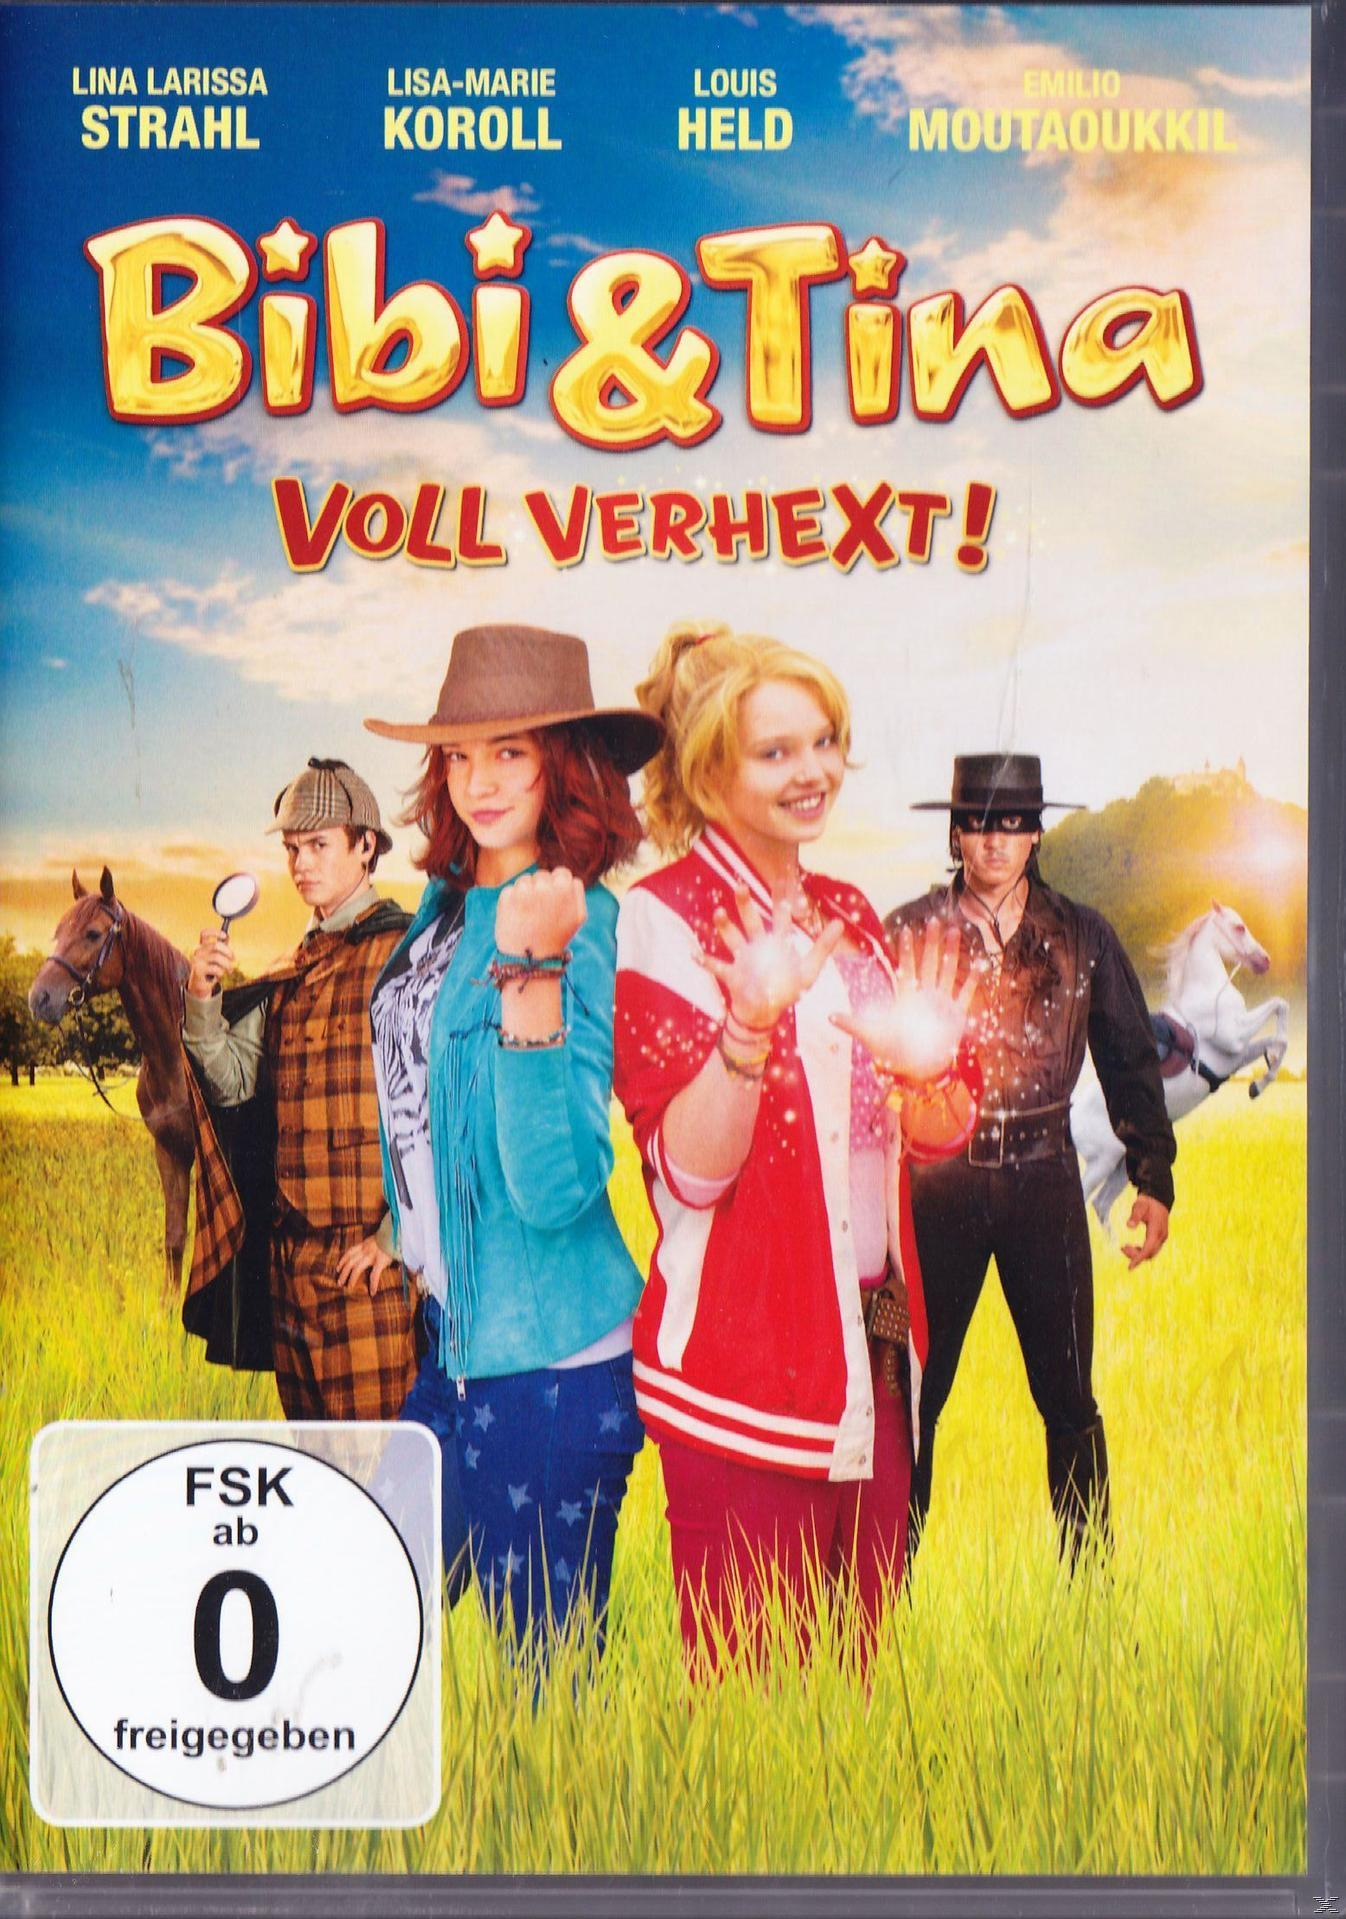 Bibi & - verhext! Voll Tina DVD